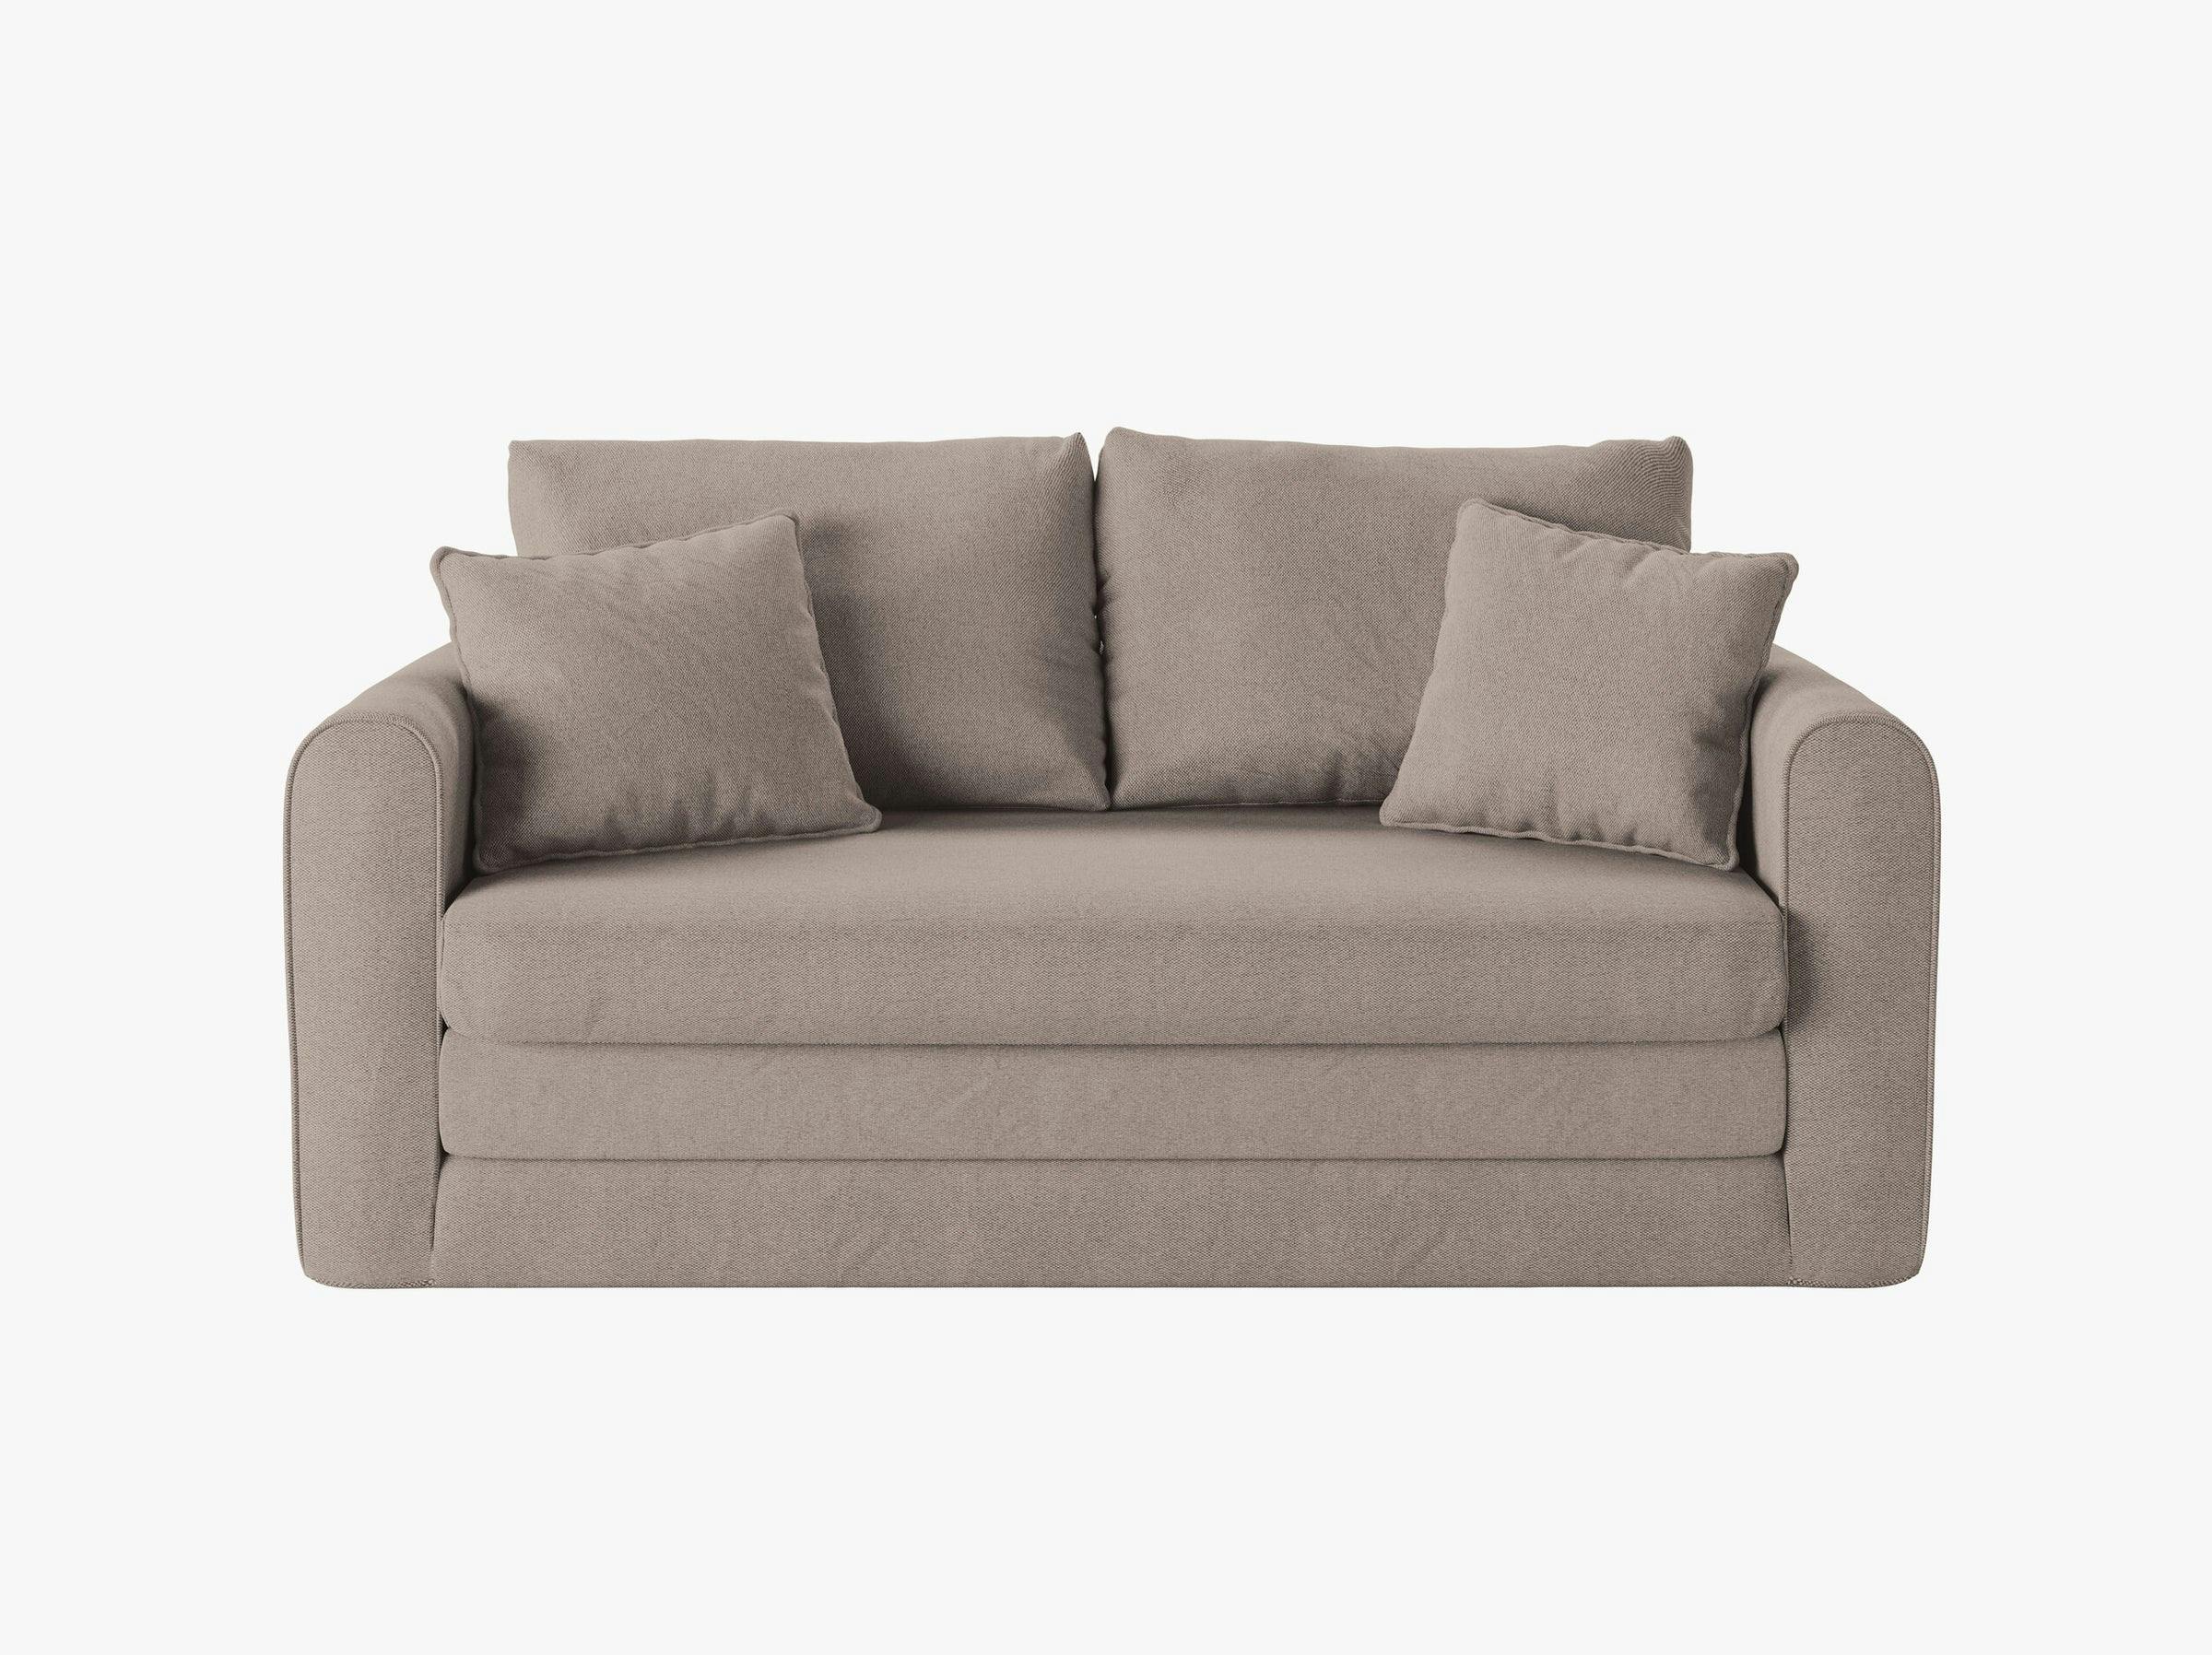 Lido sofás tessuto strutturato beige